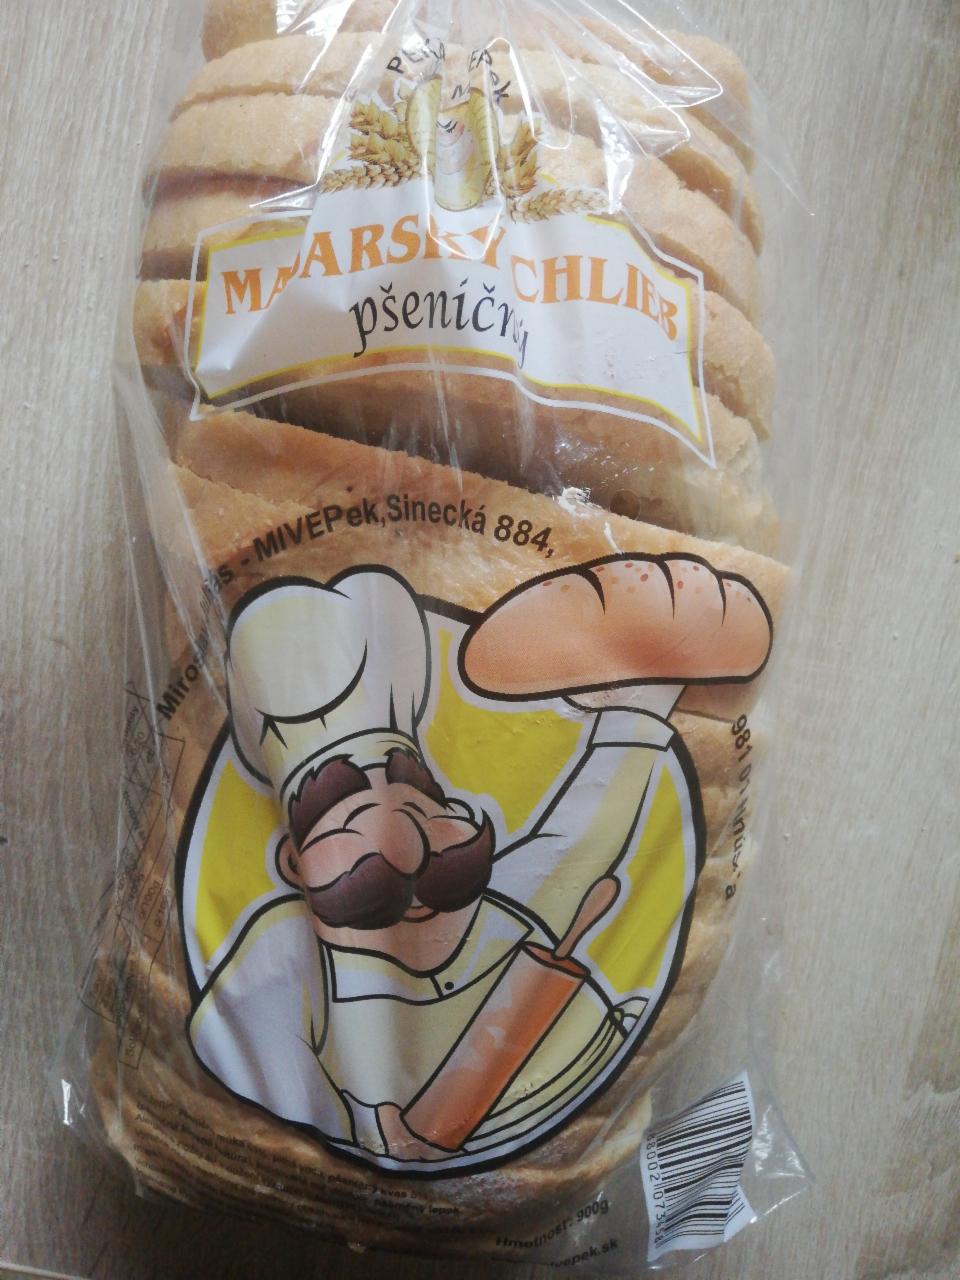 Fotografie - Maďarský chlieb pšeničný 